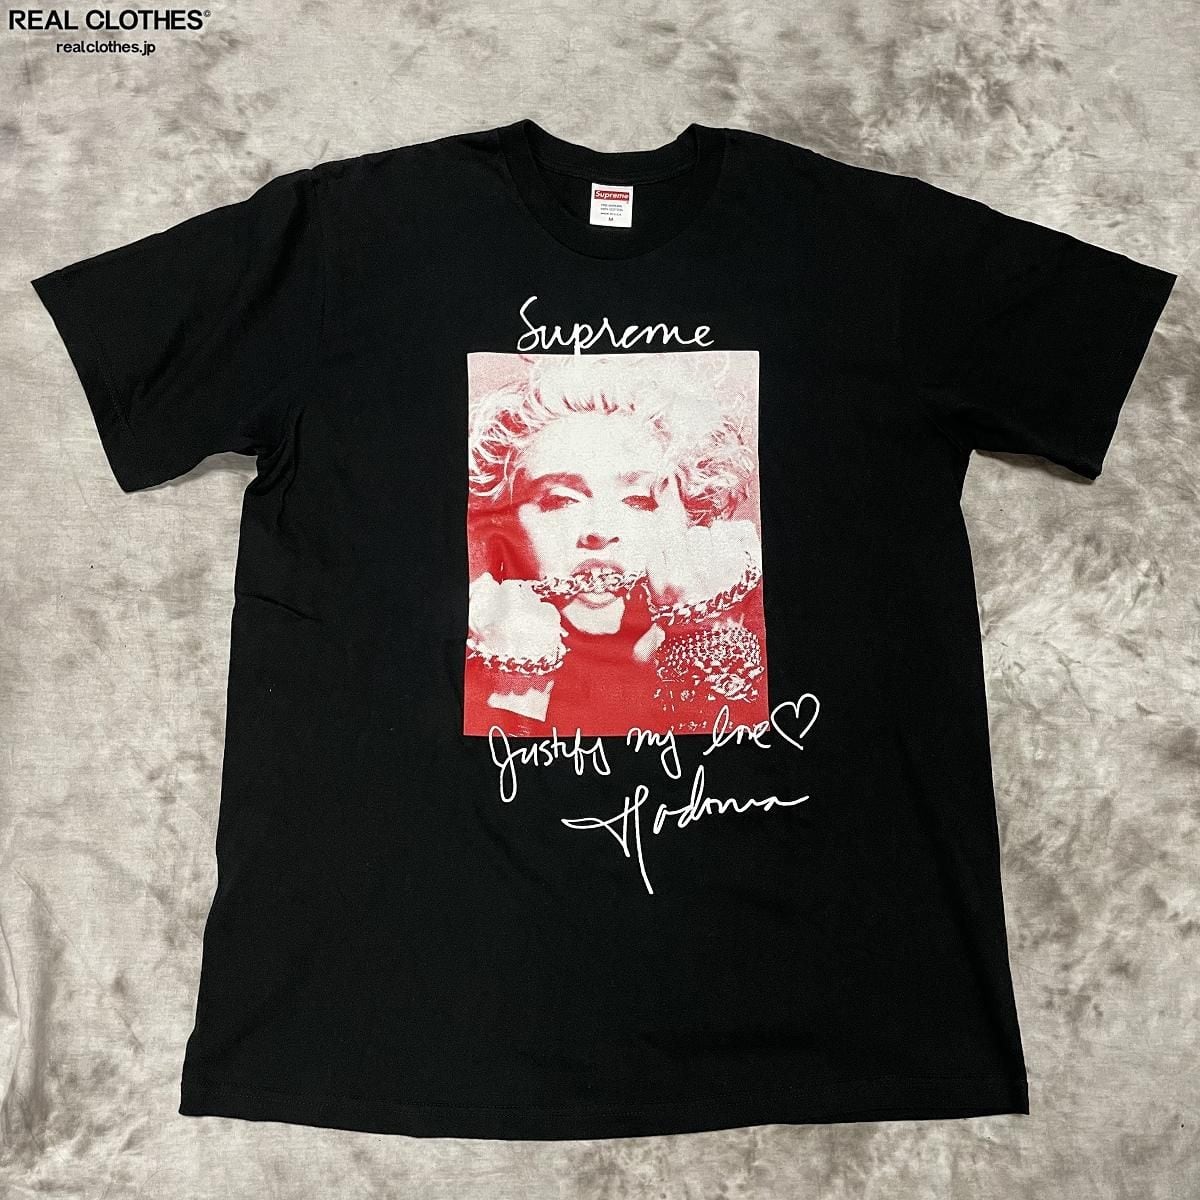 【新品】18aw Supreme Madonna Tee グレー s Tシャツ